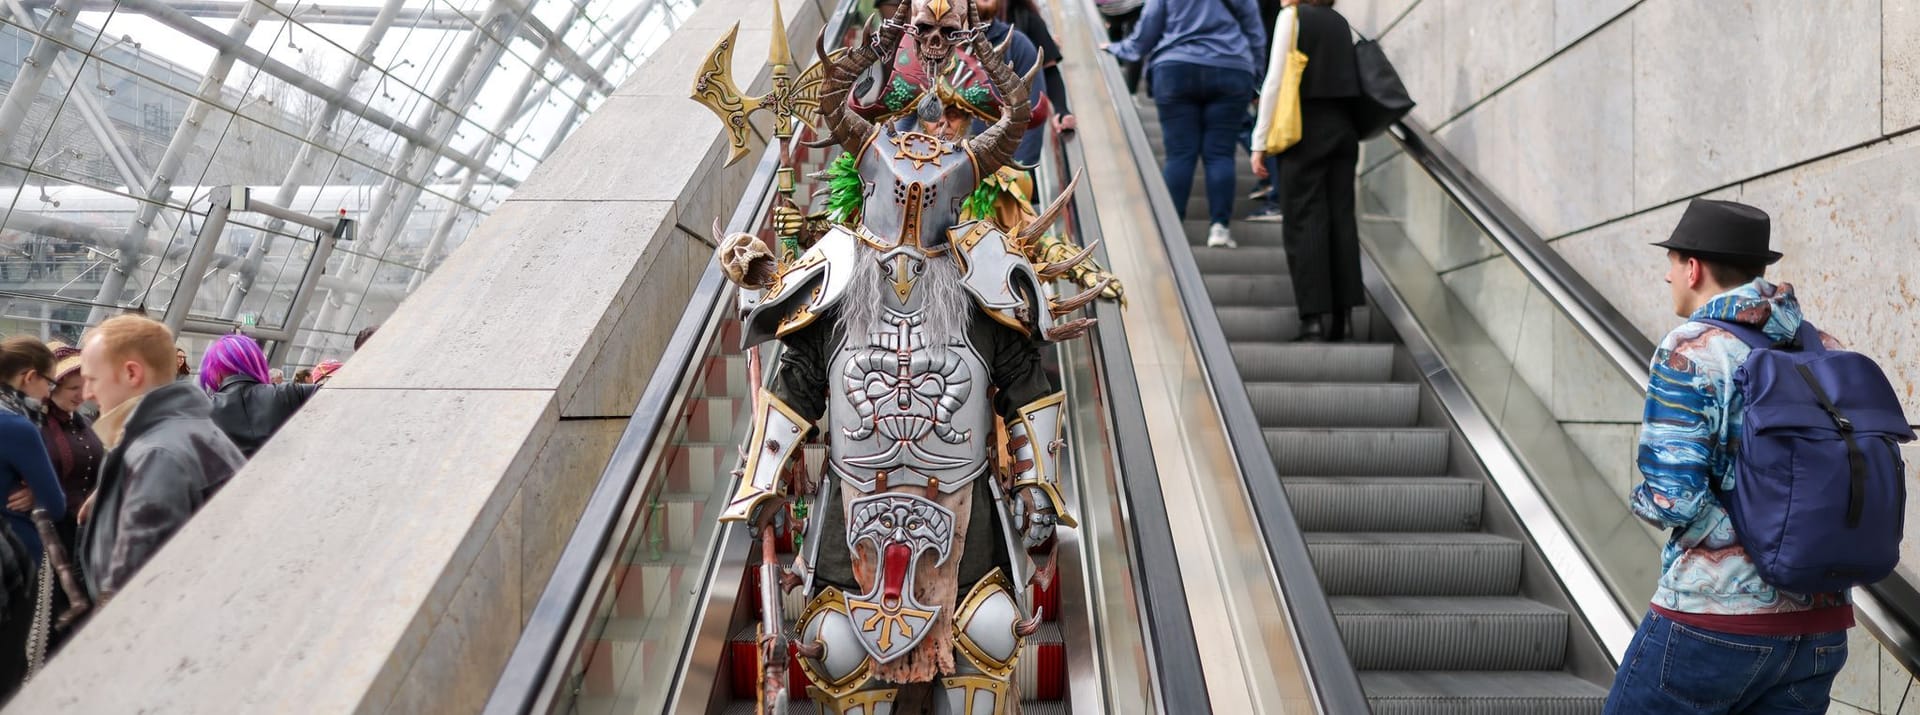 Cosplayer fahren mit einer Rolltreppe auf der Leipziger Buchmesse.